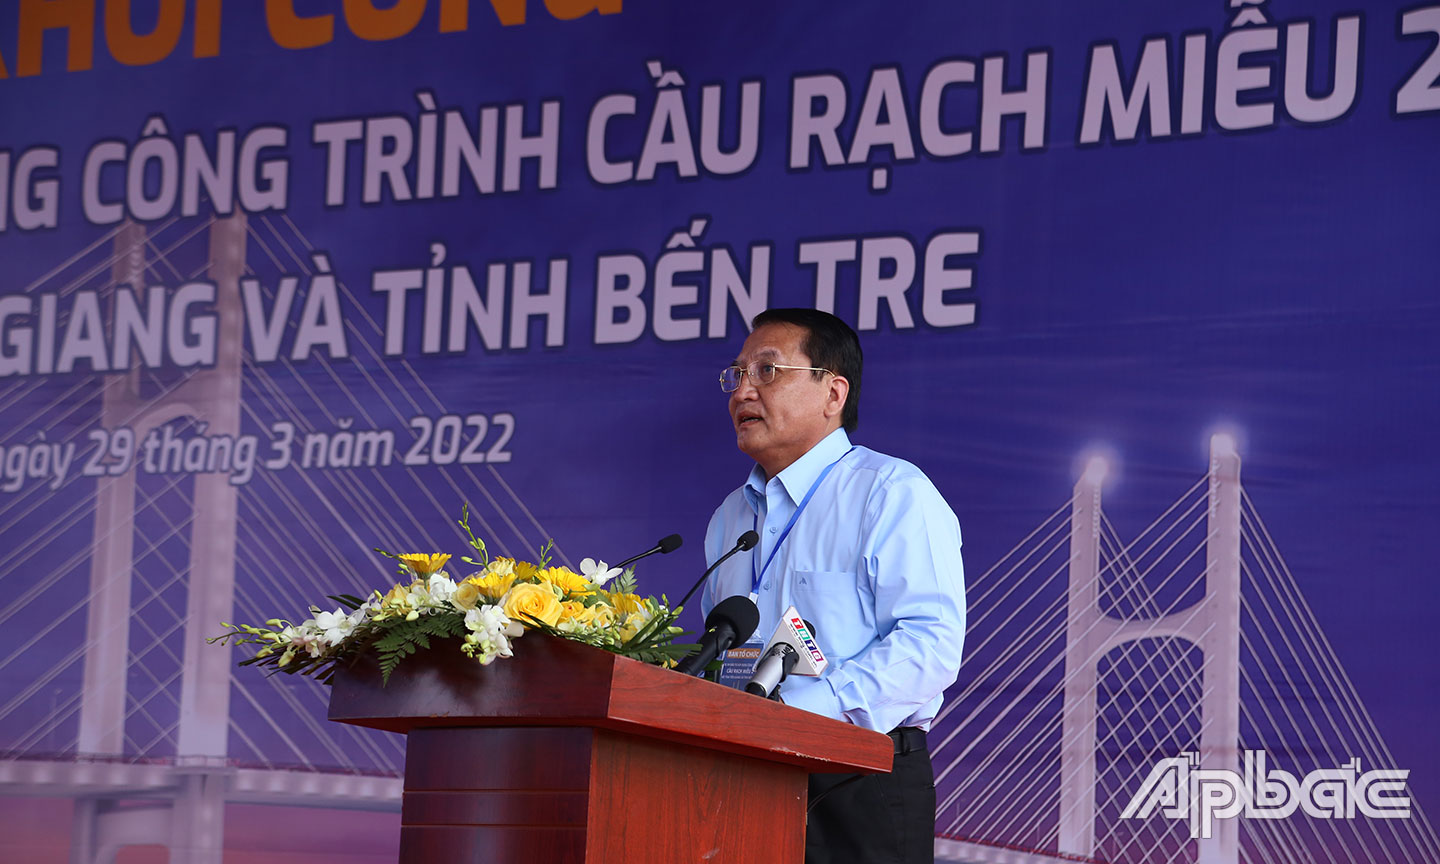 Phó Chủ tịch UBND tỉnh Tiền Giang Nguyễn Văn Trọng phát biểu tại buổi Lễ.